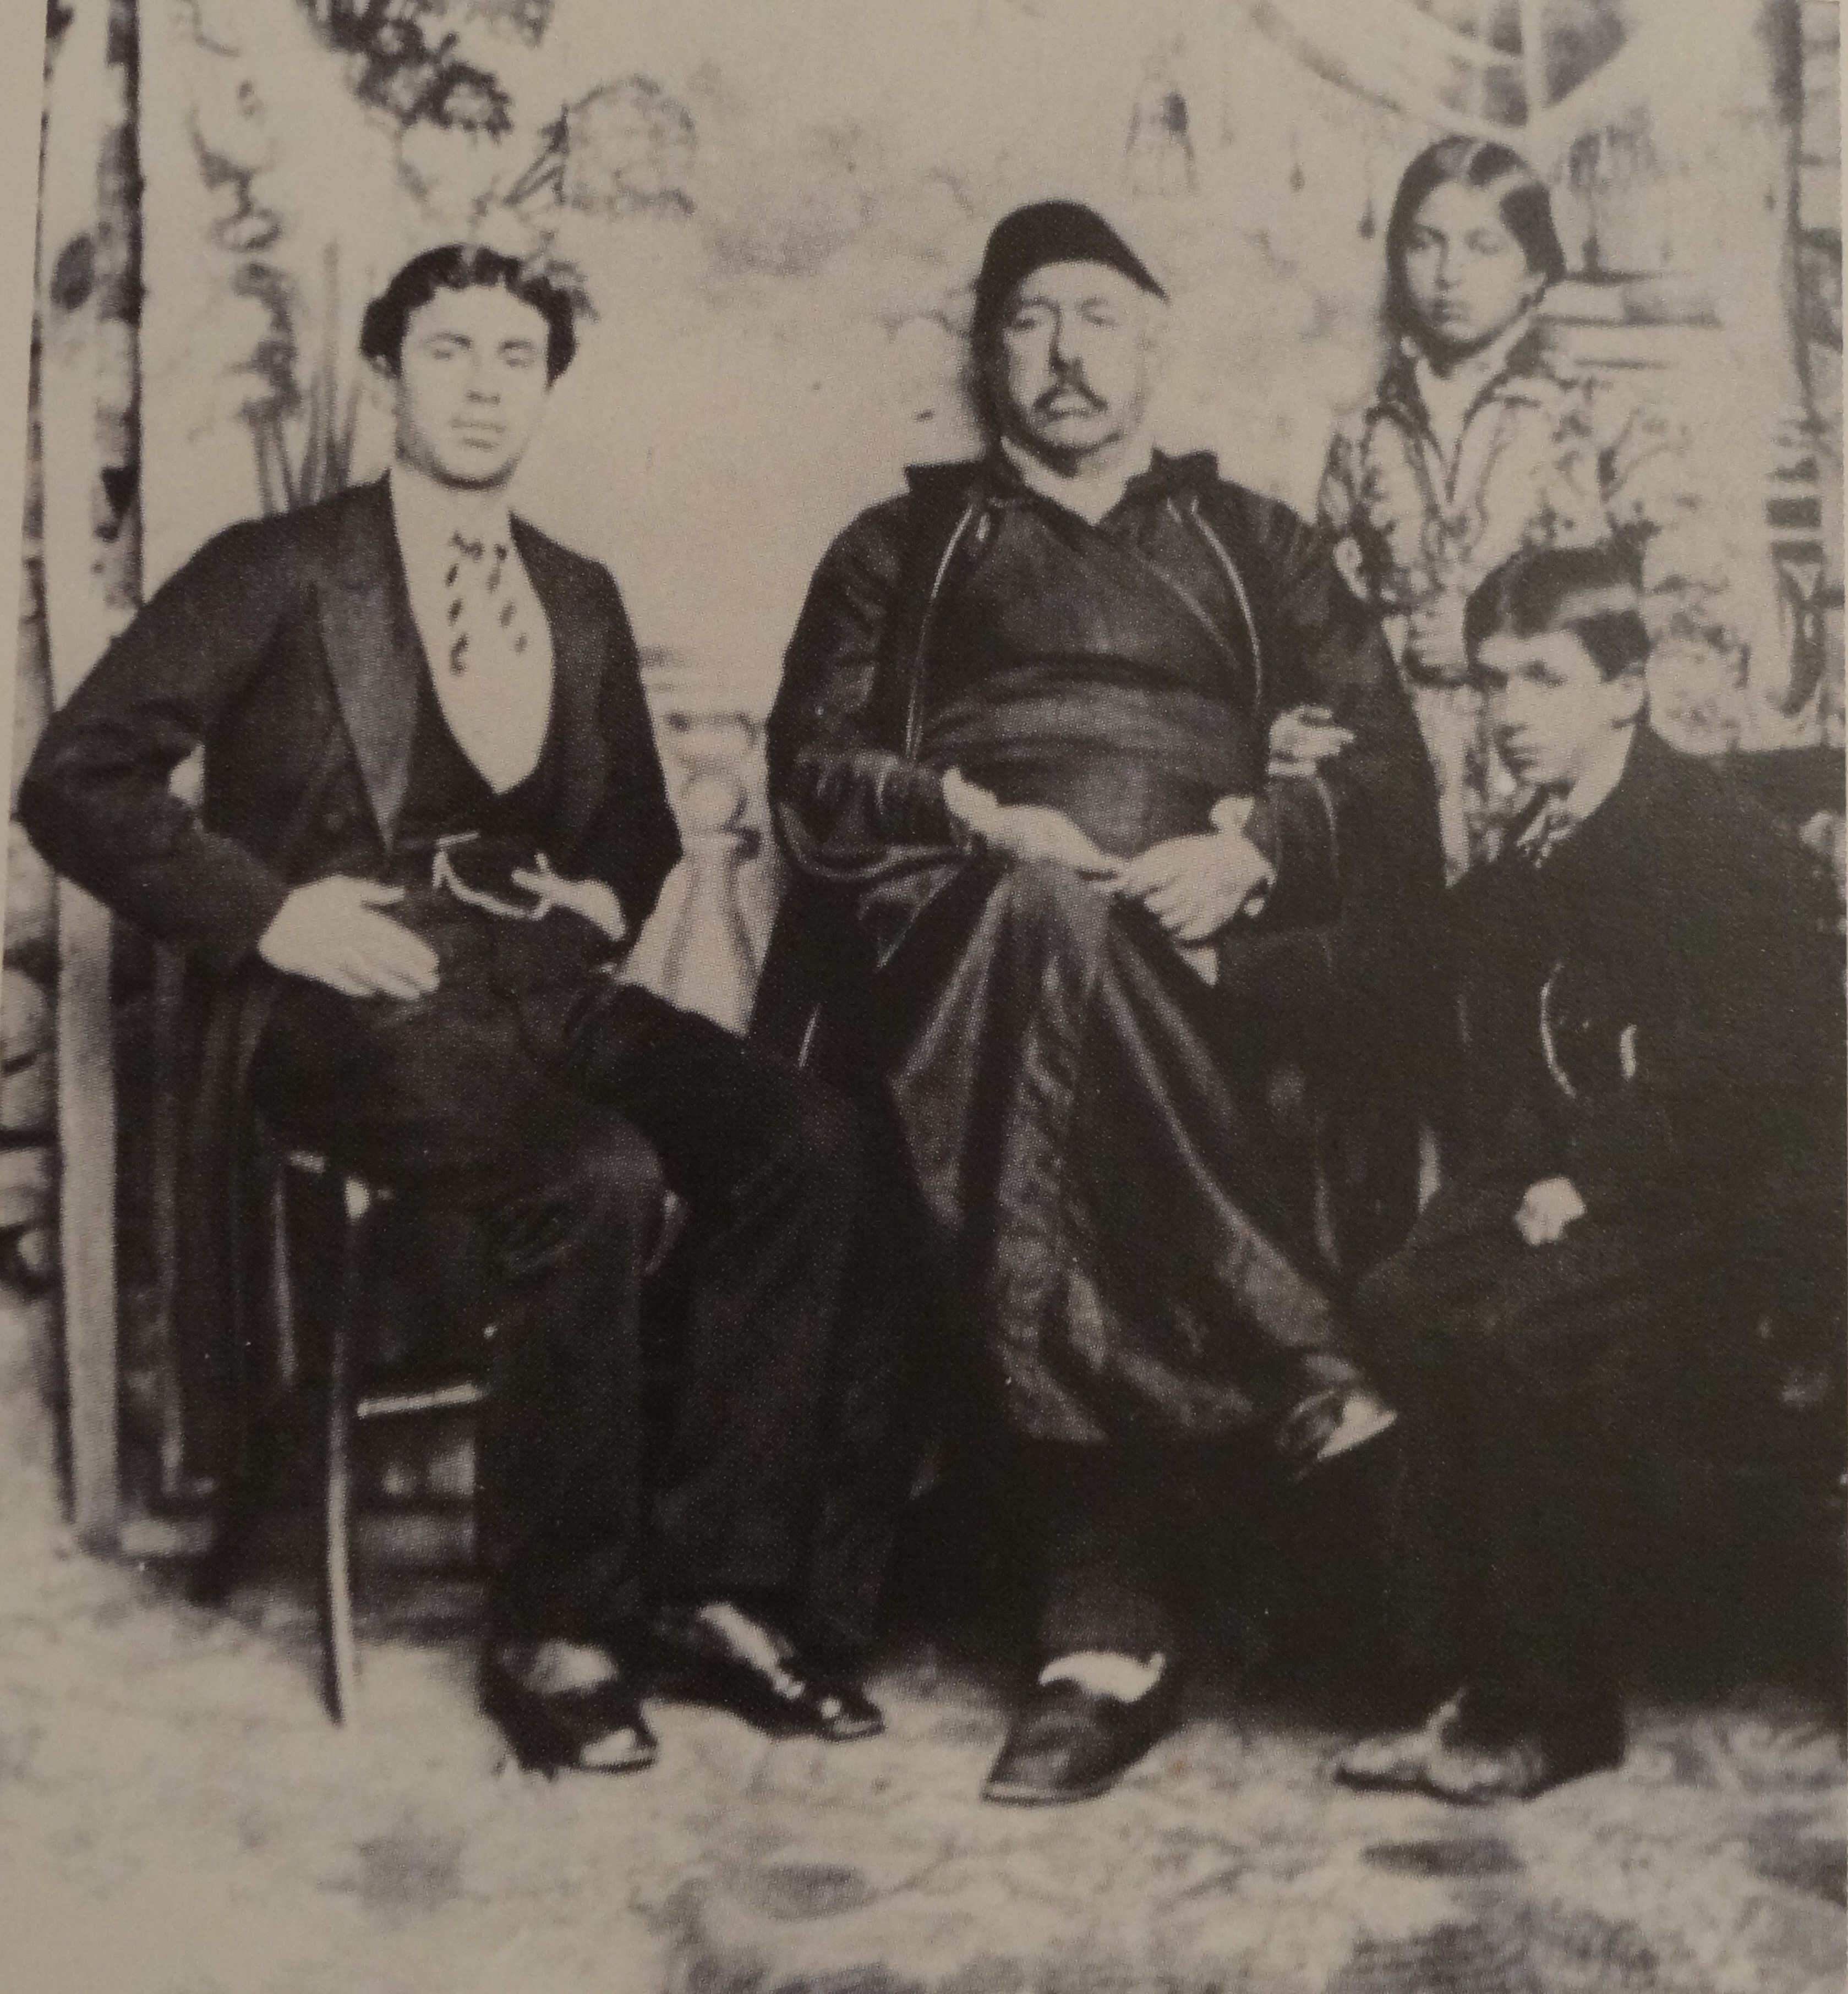 Κολάκης Μιχάλη Αβέρωφ (1814-1899) οι γιοί του Κωνσταντίνος και Γεώργιος και η κόρη του Ευδοκία.